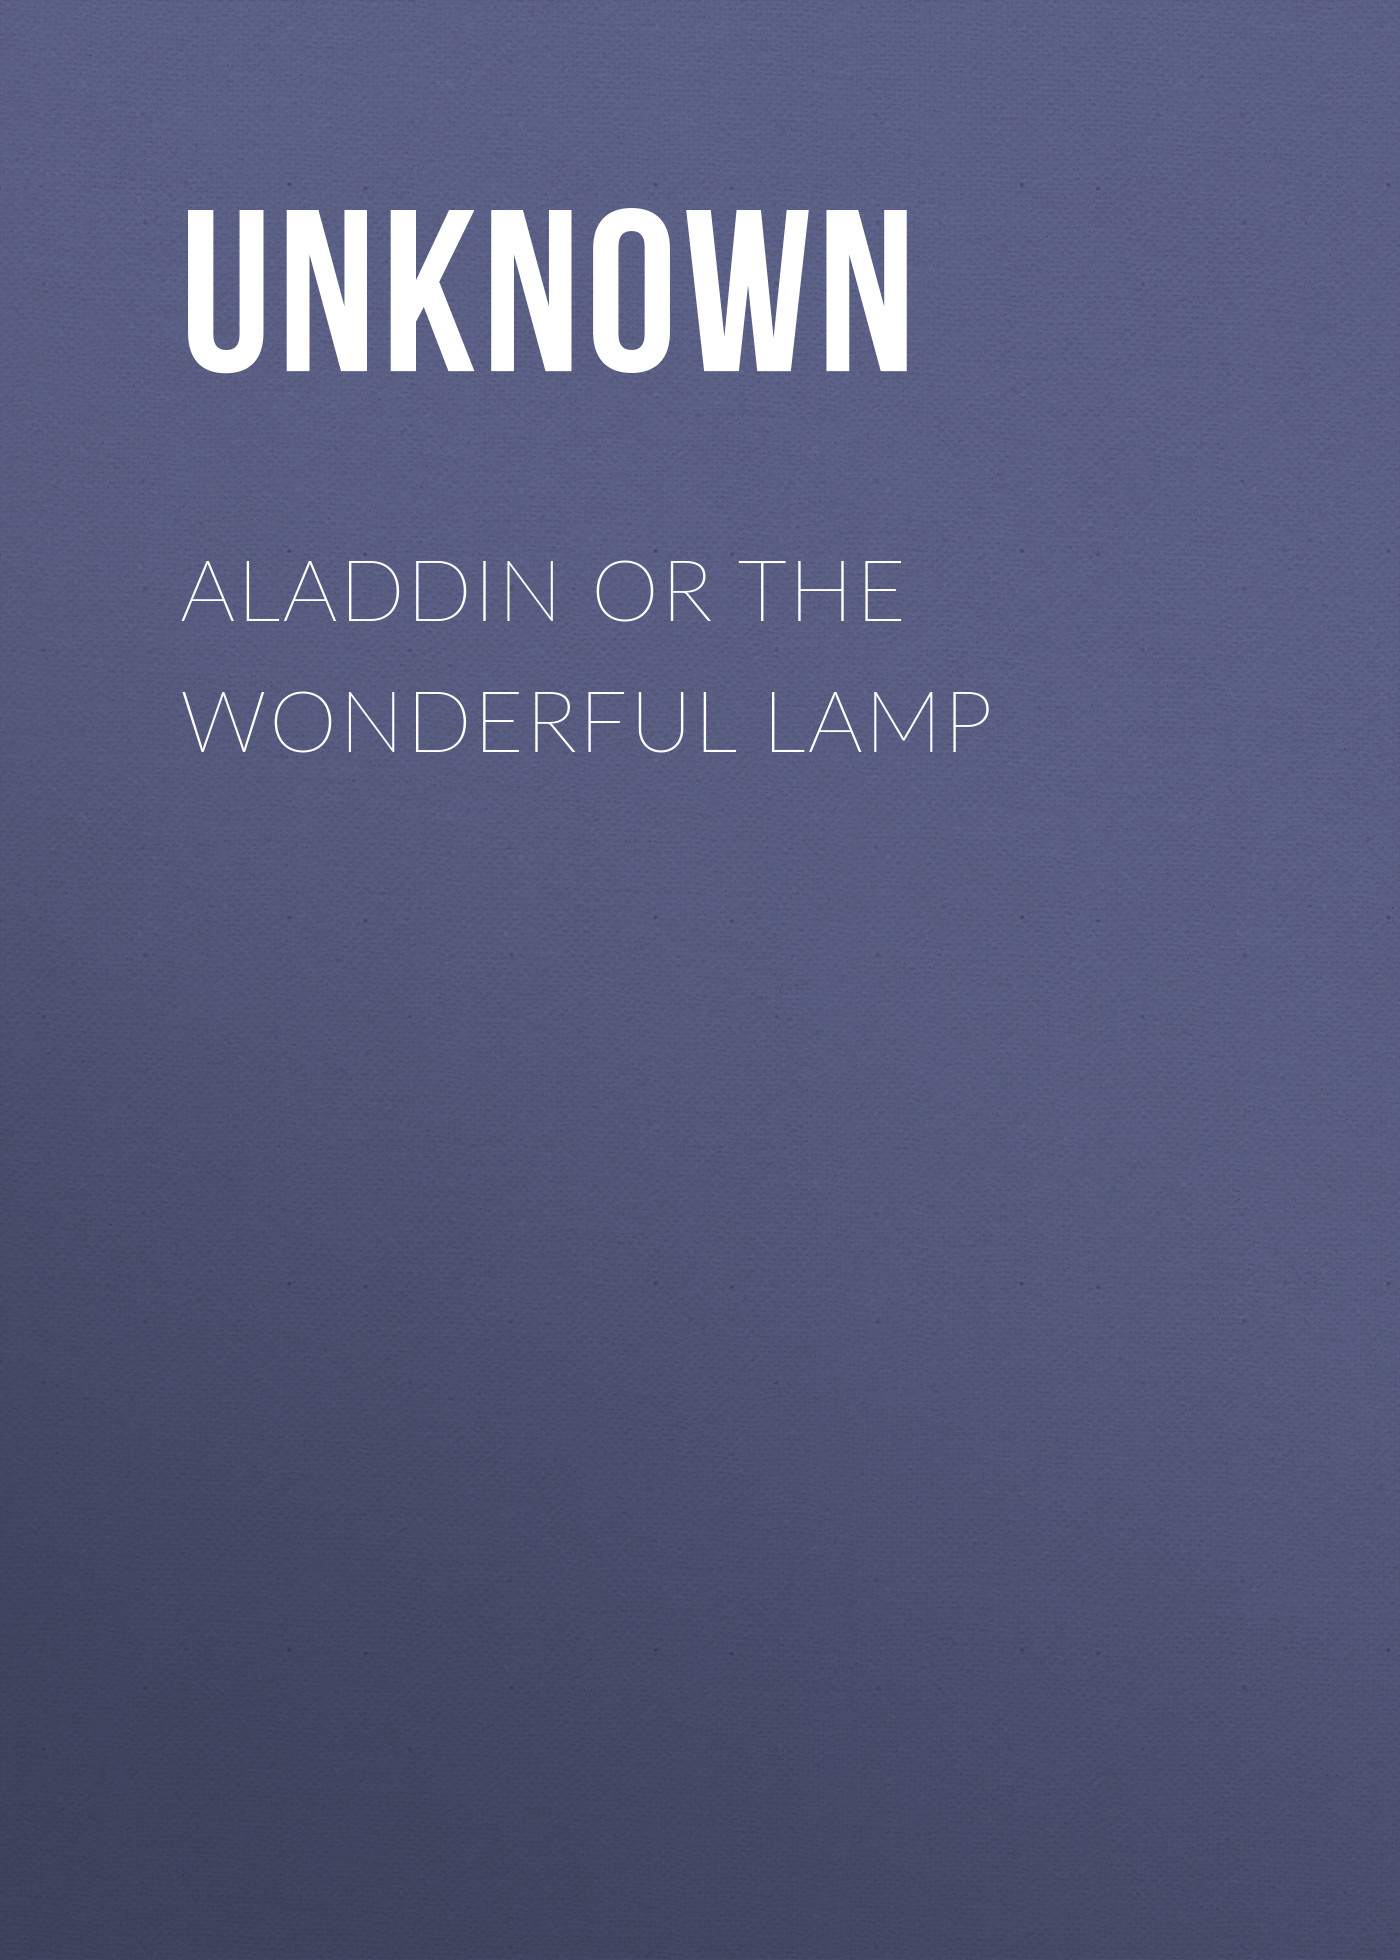 Книга Aladdin or The Wonderful Lamp из серии , созданная Unknown Unknown, может относится к жанру Детские стихи, Поэзия, Зарубежная старинная литература, Зарубежная классика, Зарубежные стихи. Стоимость электронной книги Aladdin or The Wonderful Lamp с идентификатором 35491783 составляет 0 руб.